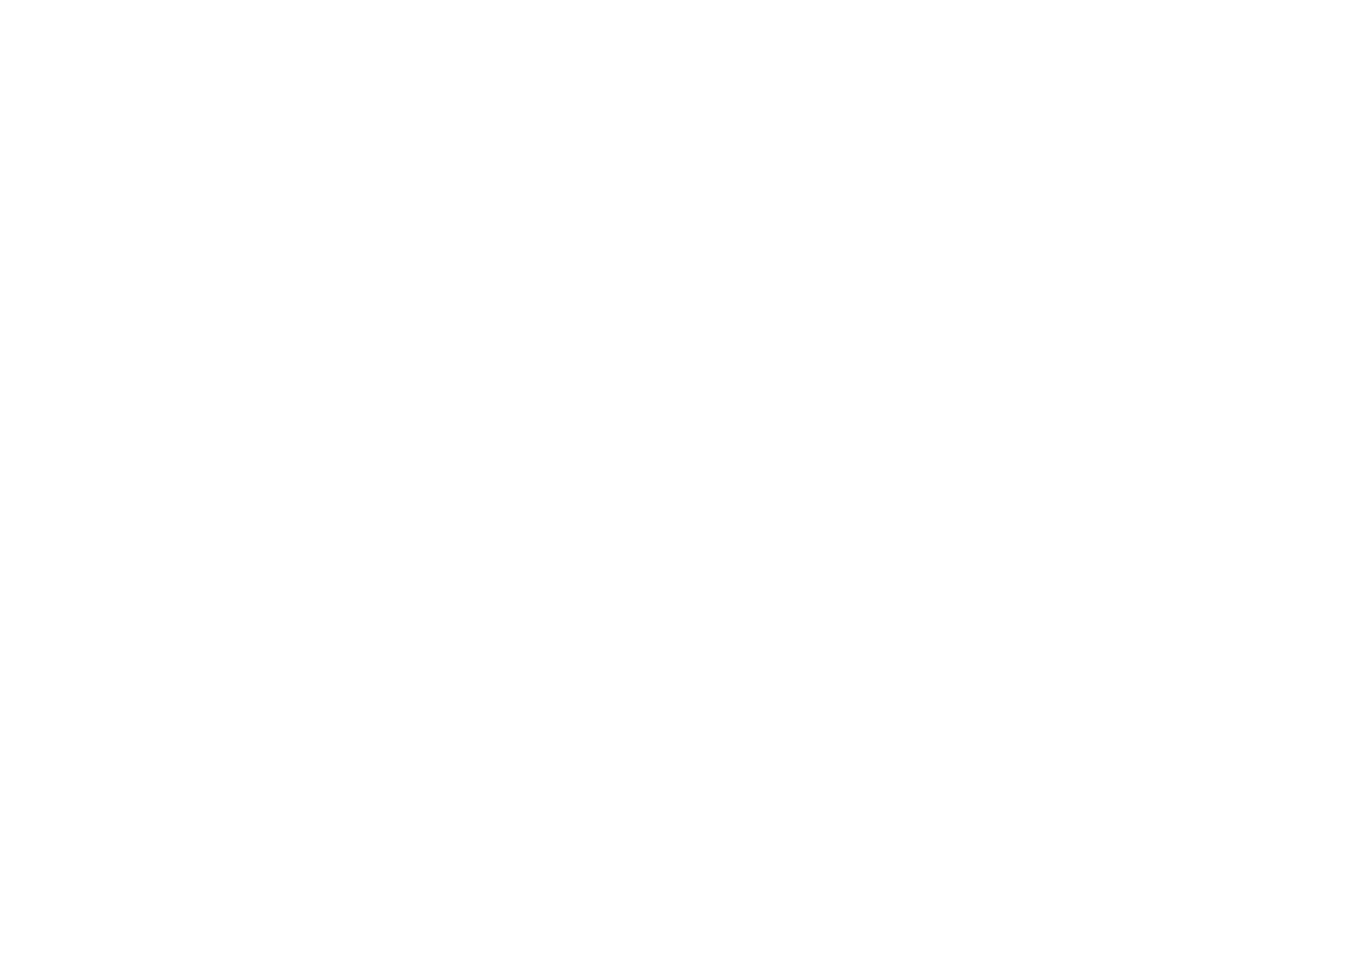 Haidilao Hot Pot logo